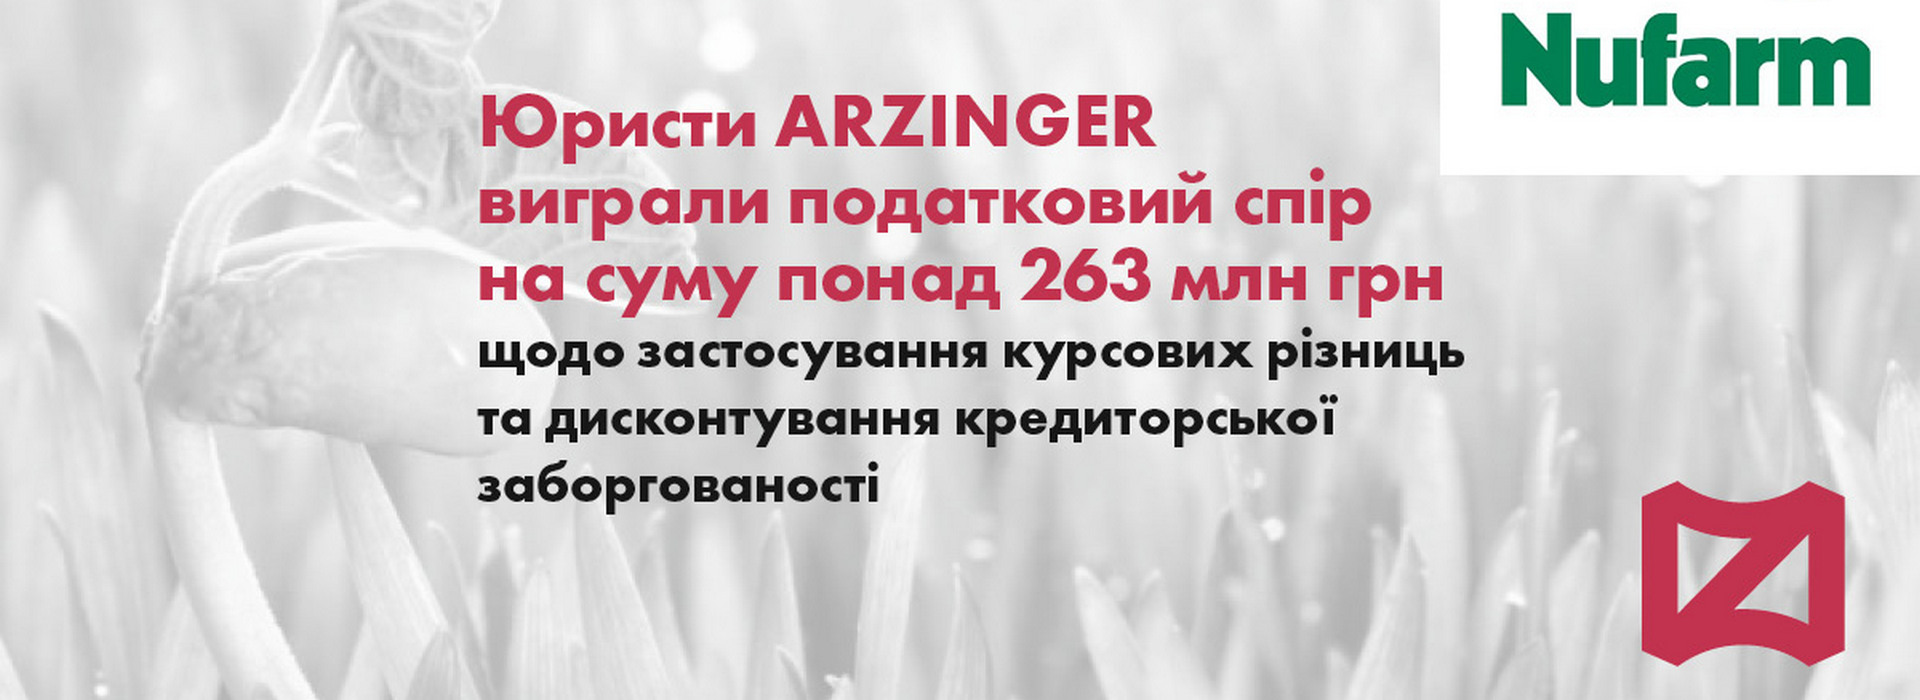 Юристи arzinger виграли податковий спір на суму понад 263 млн грн щодо застосування курсових різниць та дисконтування кредиторської заборгованості